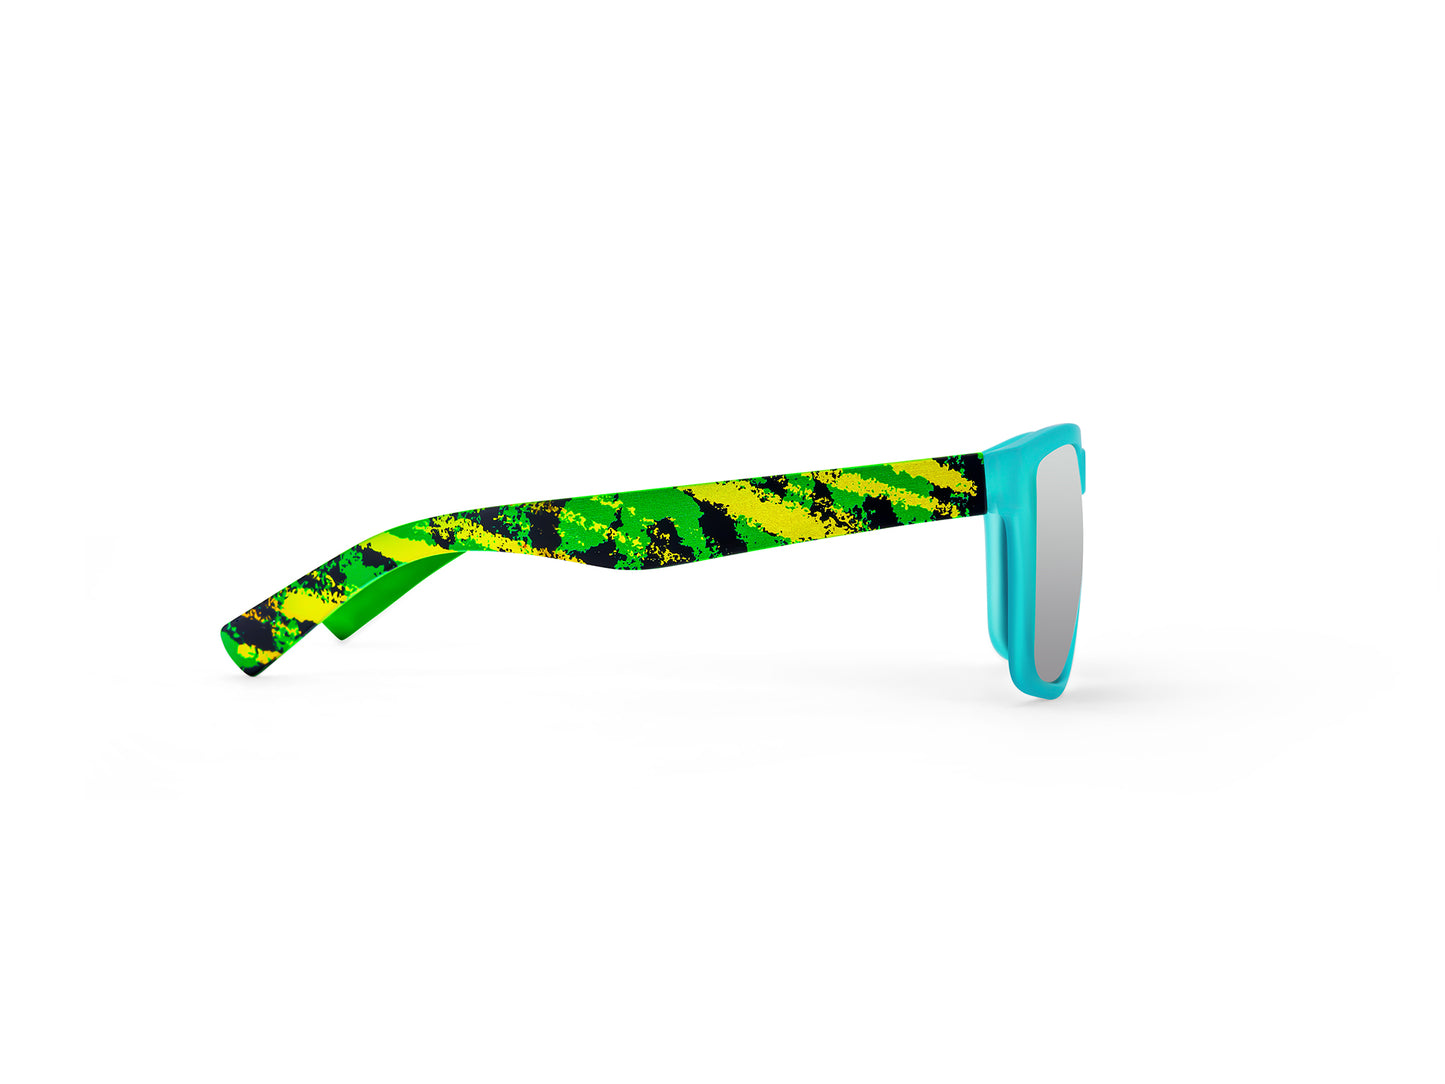 BLITZ H2O Floating Polarized Sunglasses/LIFESTYLE